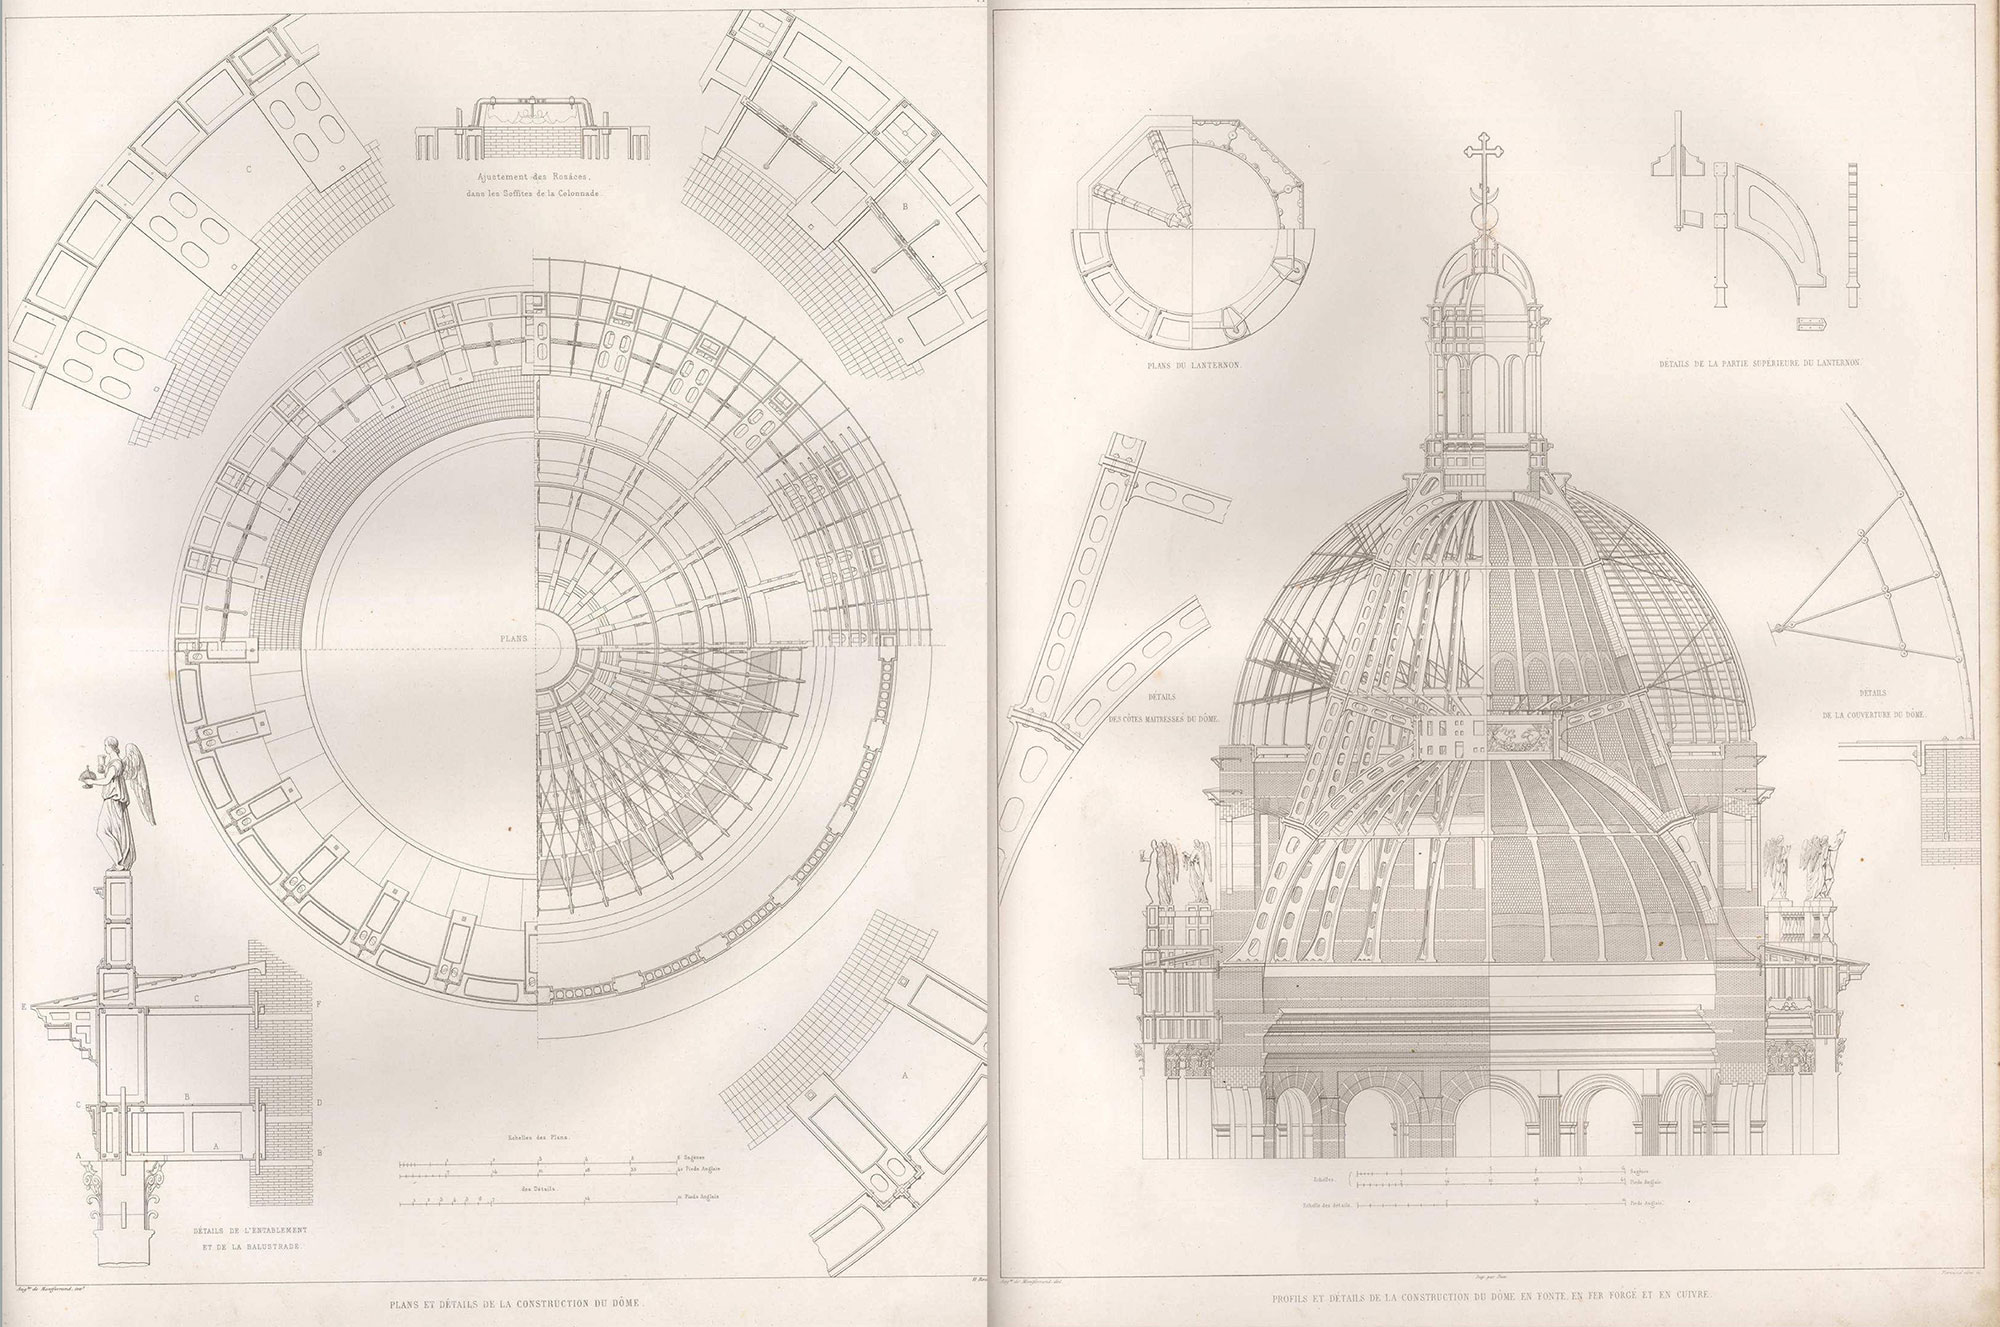 Конструкция центрального купола Исаакиевского собора, рисуноки из альбома Огюста Монферрана, 1845 года